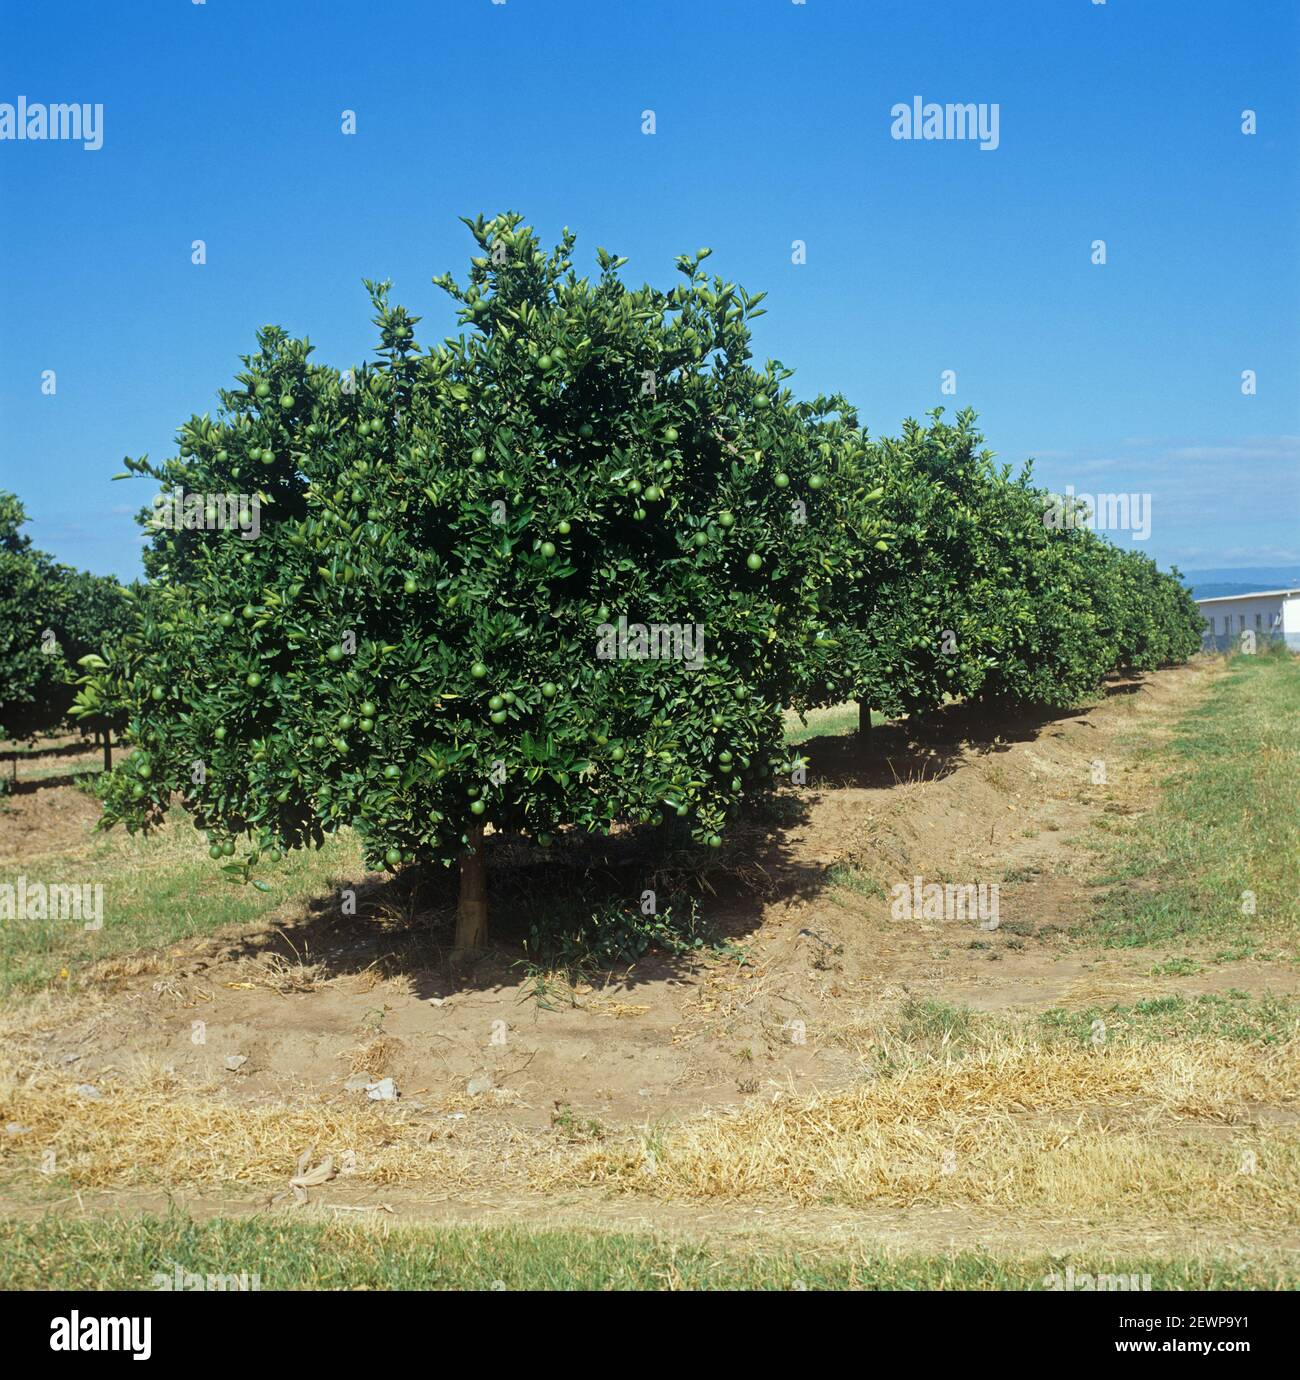 Rangées d'orangers (Citrus sinensis) avec fruits verts en maturation dans un verger du Bas Veldt, Transvaal, Afrique du Sud, février Banque D'Images